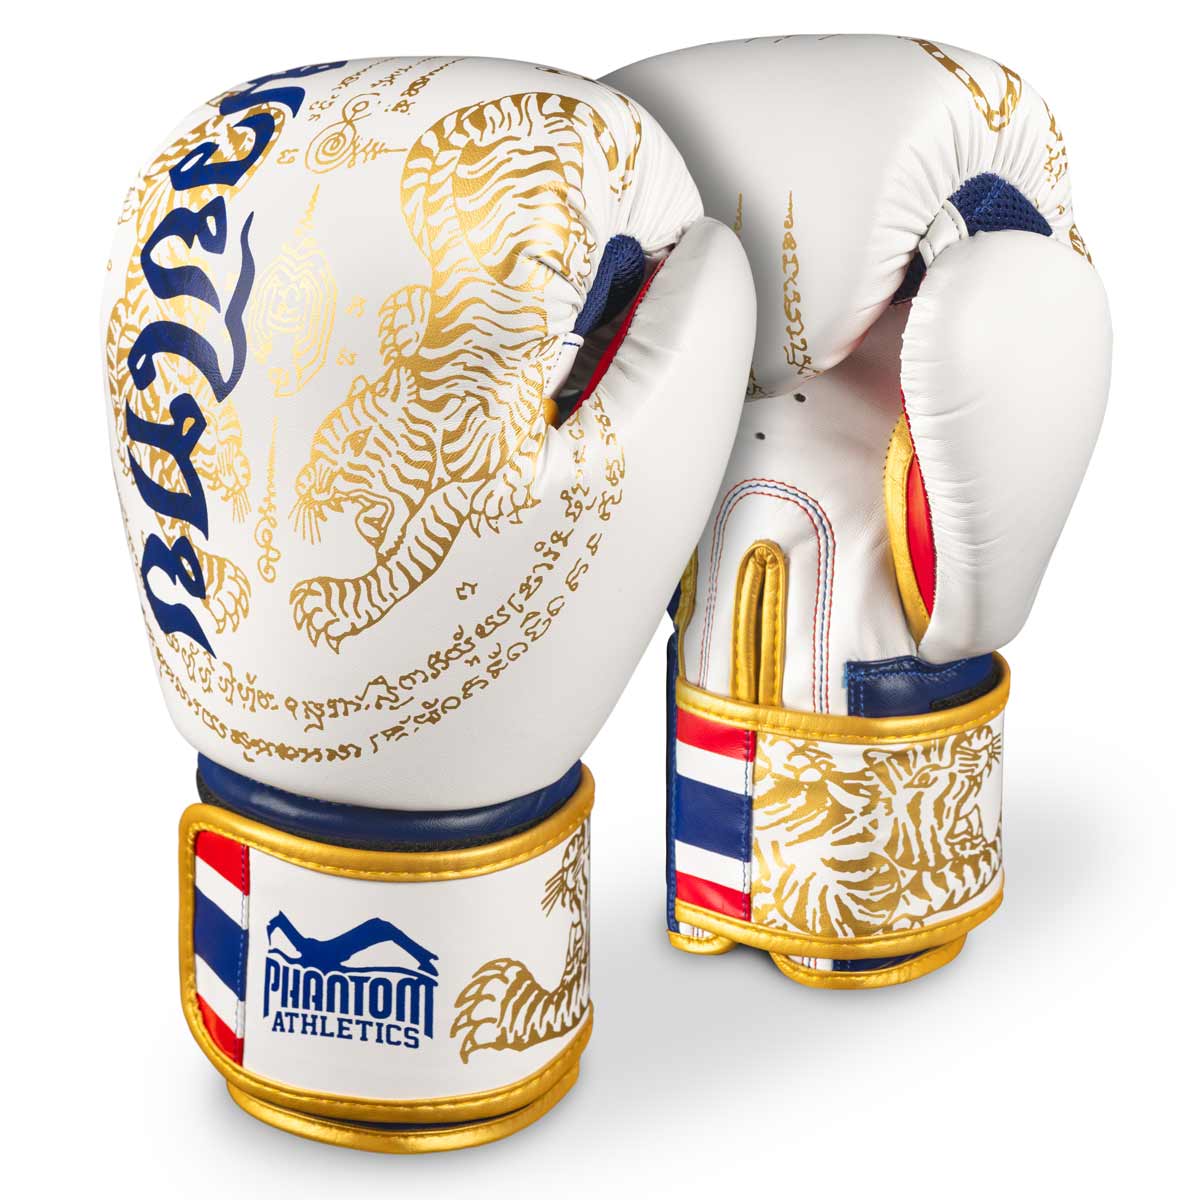 Phantom Muay Thai Boxhandschuhe mit thailändischem Print in der Limited Edition Weiß/Gold/Blau/Rot.